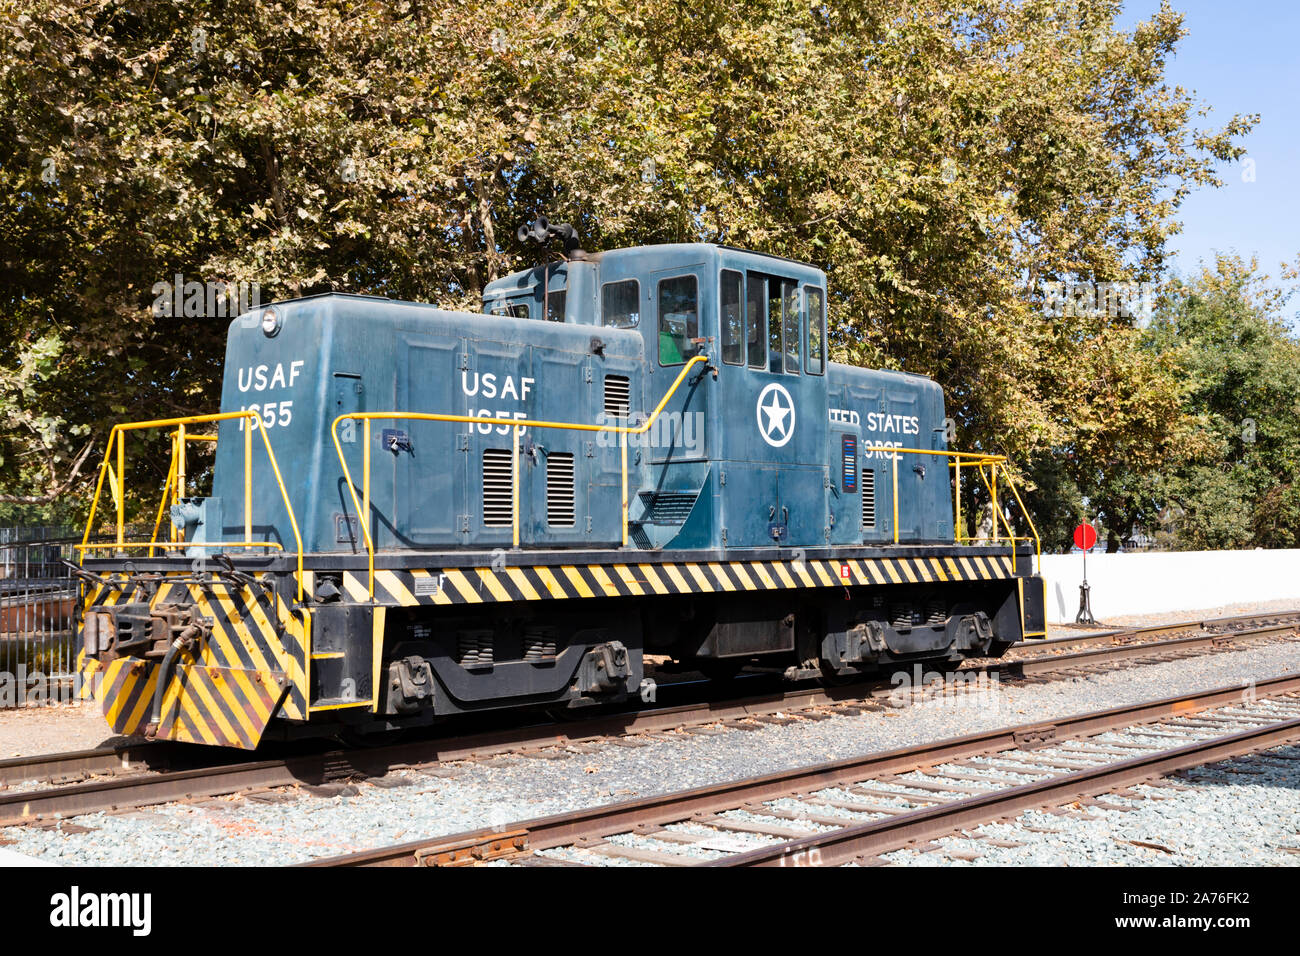 USAF 1655 ex locomotive de l'utilitaire au California State Railroad Museum, Sacramento, capitale de l'État de Californie, États-Unis d'Amérique. Banque D'Images